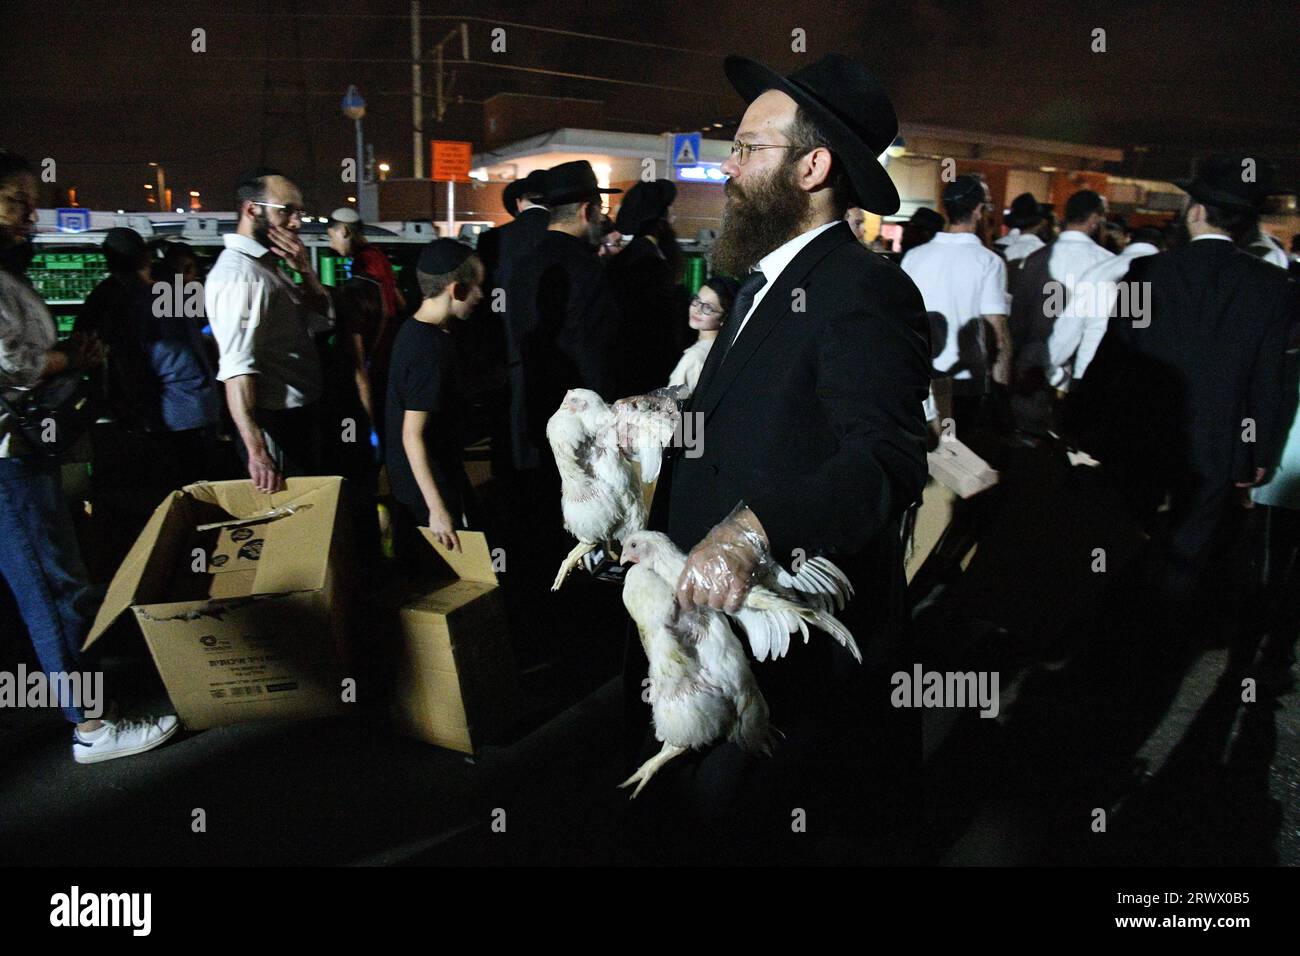 (230921) -- BNEI BRAK, 21. September 2023 (Xinhua) -- Ultra-orthodoxe Juden führen die Kaparot-Zeremonie durch, bei der weiße Hühner als symbolische Sühnegeste vor Jom Kippur, dem jüdischen Sühnestag, in Bnei Brak, einem Vorort von Tel Aviv, Israel, am 20. September 2023 geschlachtet werden. (JINI über Xinhua) Stockfoto